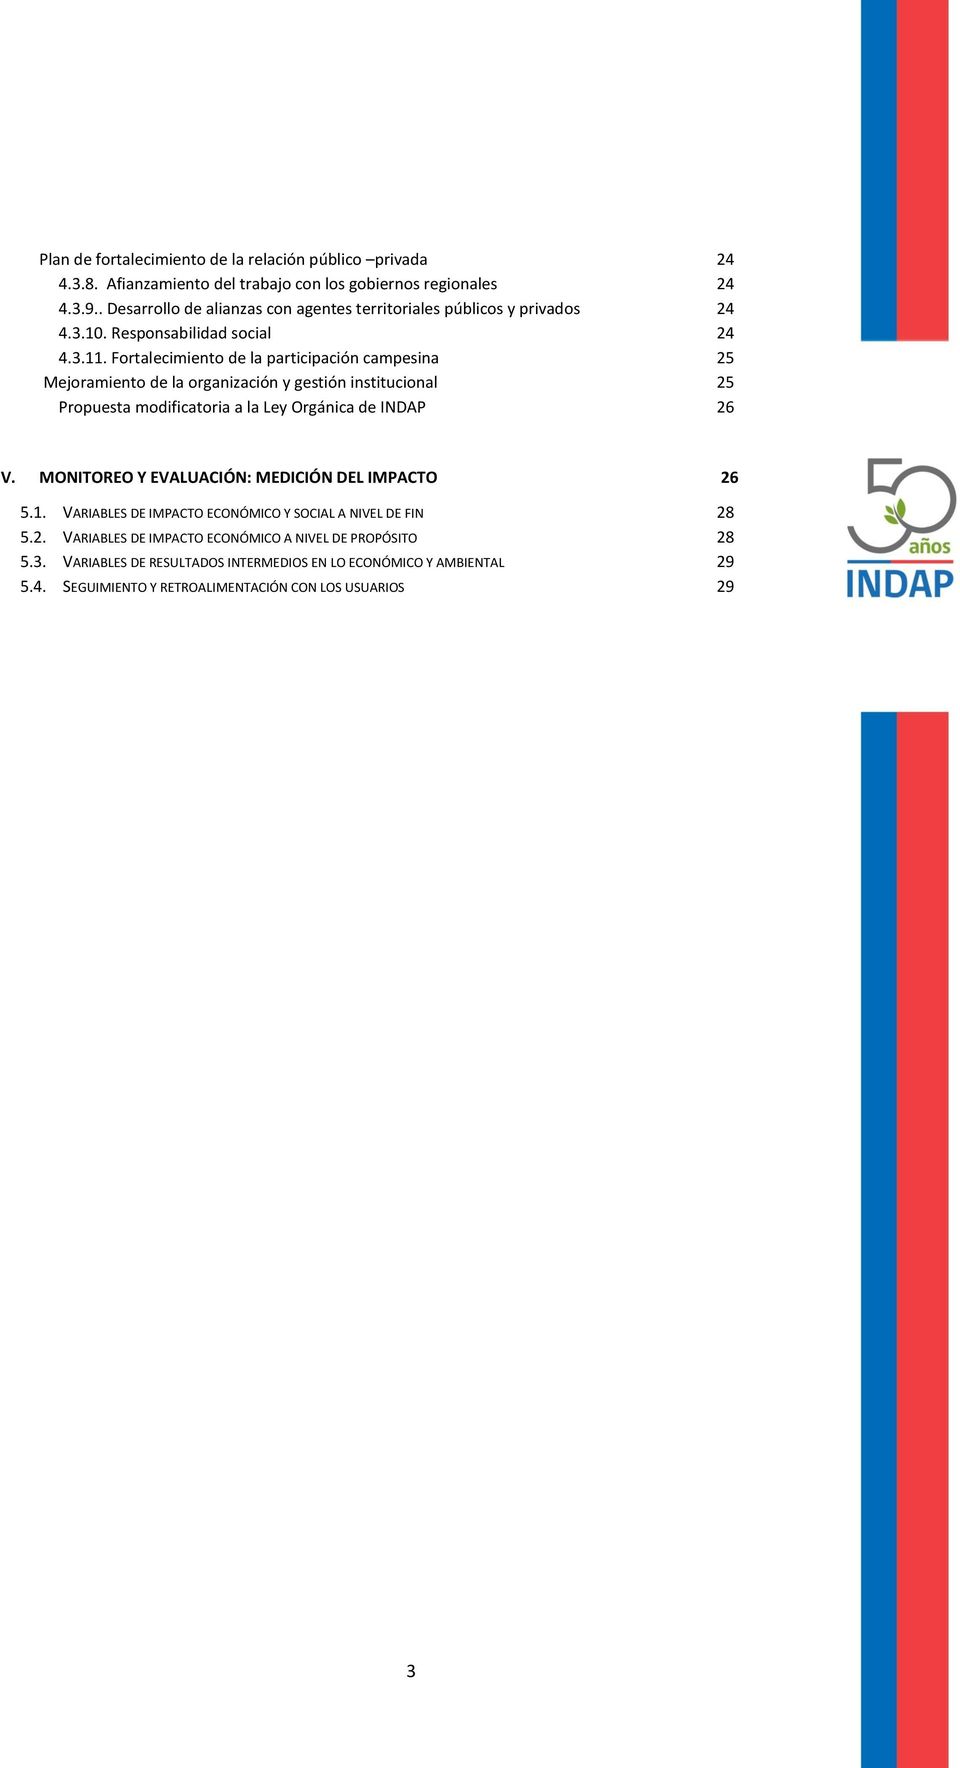 Fortalecimiento de la participación campesina 25 Mejoramiento de la organización y gestión institucional 25 Propuesta modificatoria a la Ley Orgánica de INDAP 26 V.